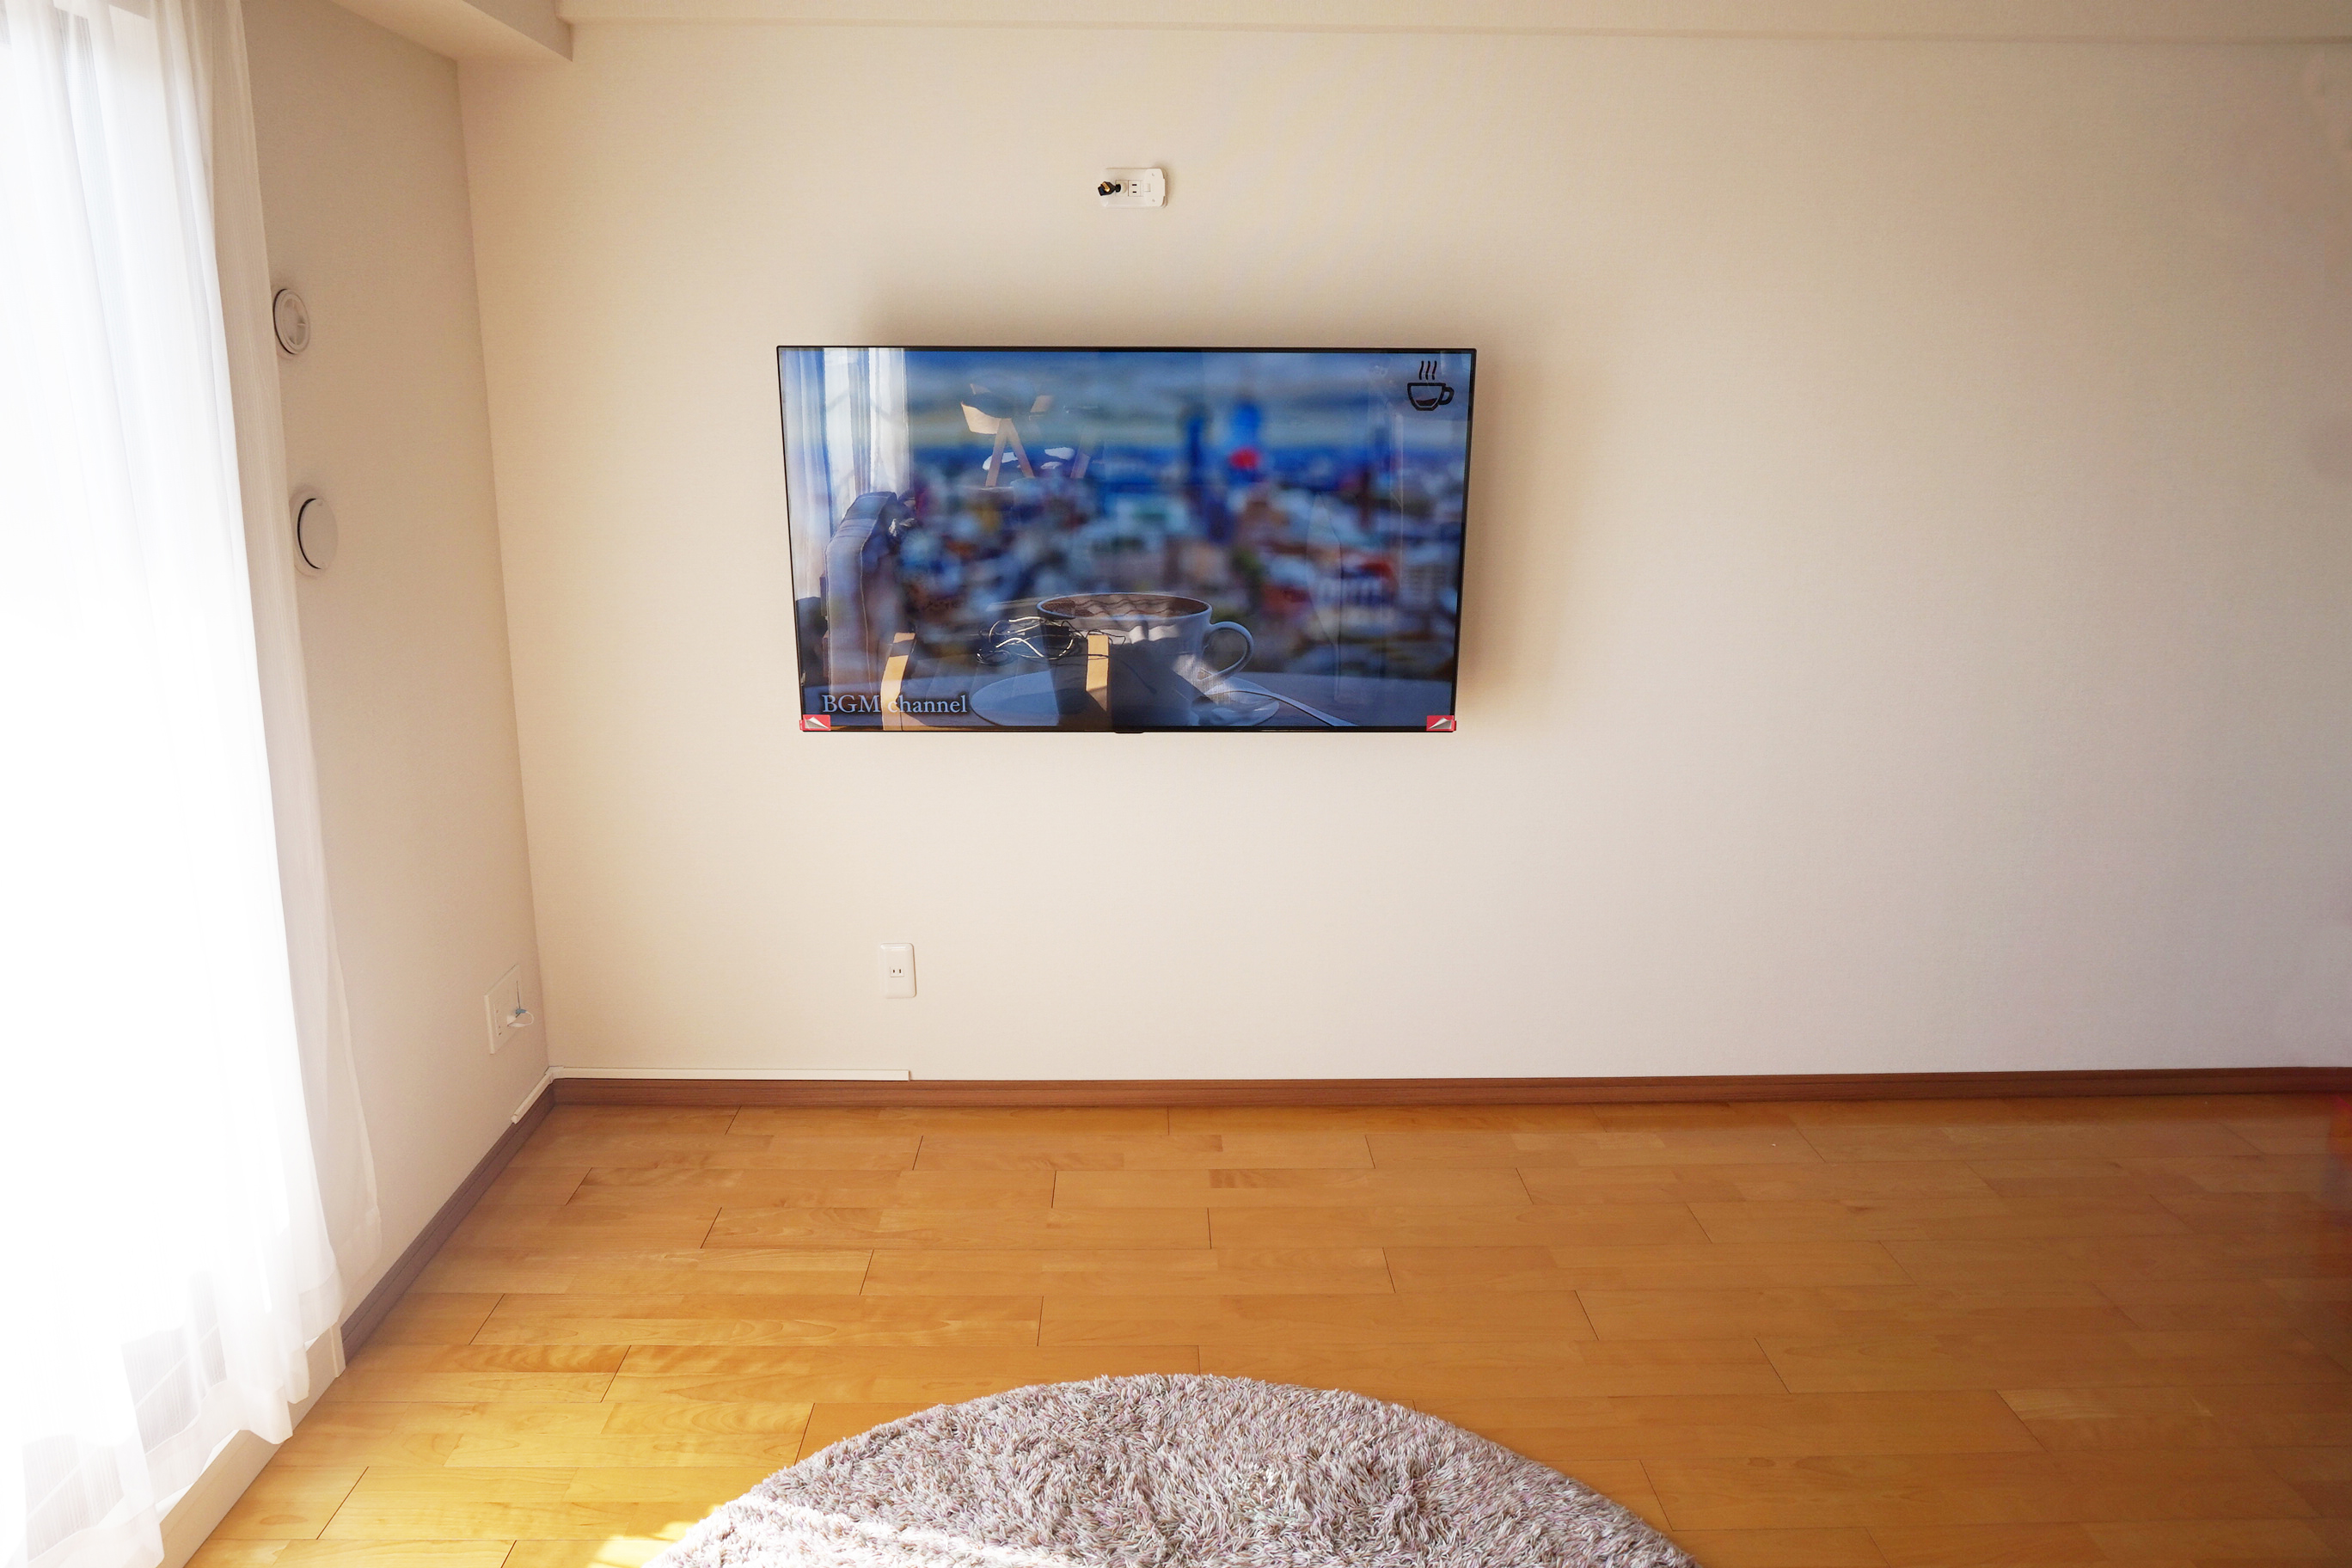 名古屋市 守山区でlg製 55インチ有機elテレビの壁掛けとシェルフ設置用コンセントの新設